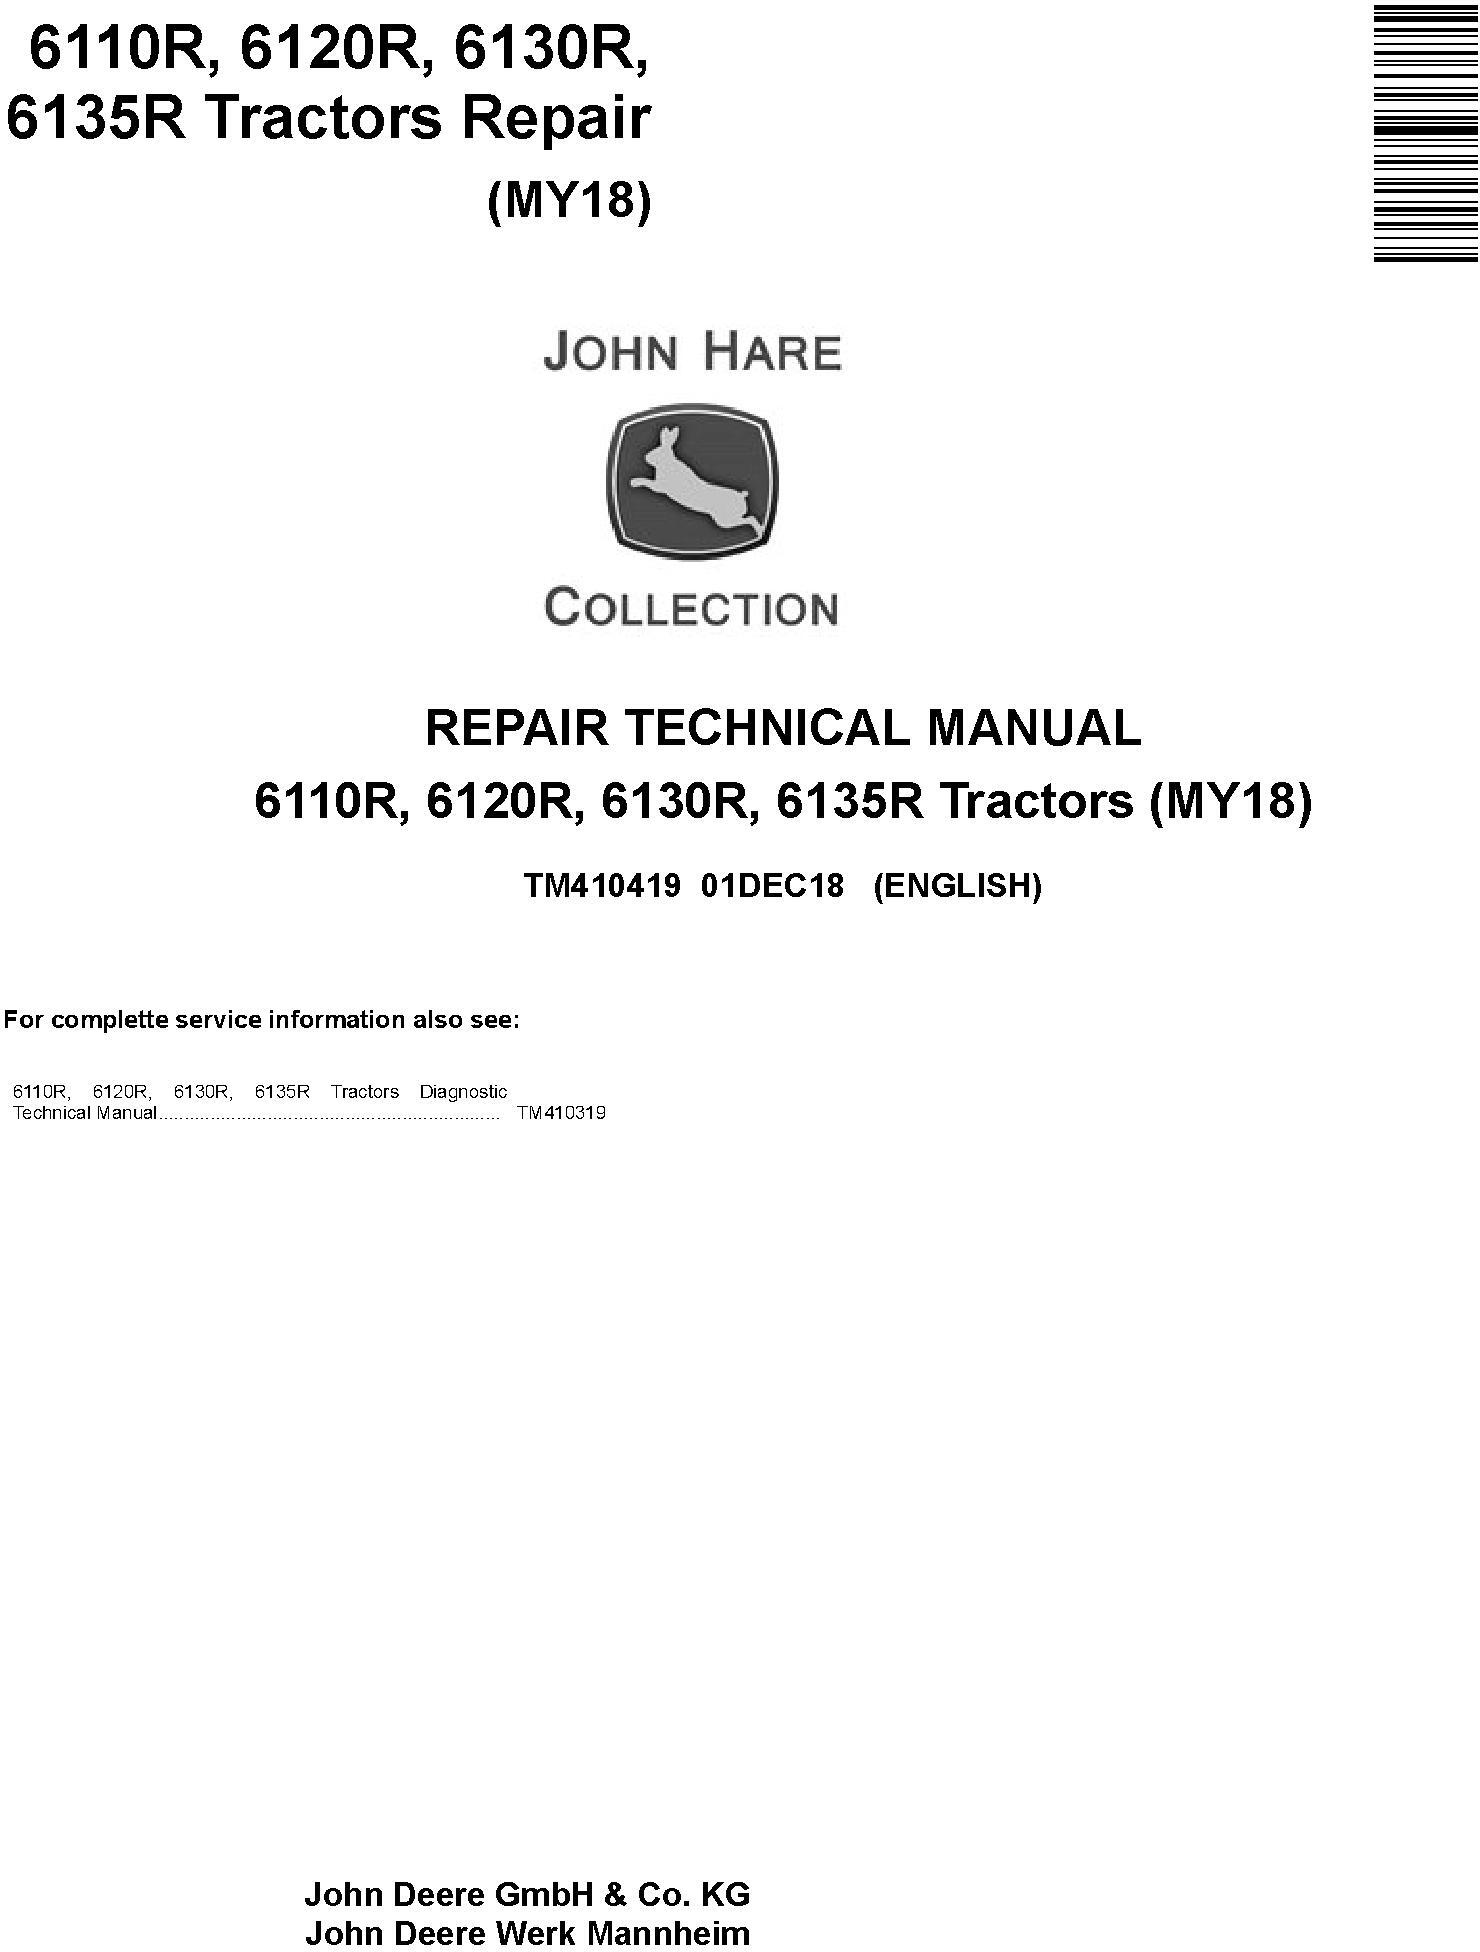 John Deere 6110R 6120R 6130R 6135R Tractor Repair Technical Manual TM410419